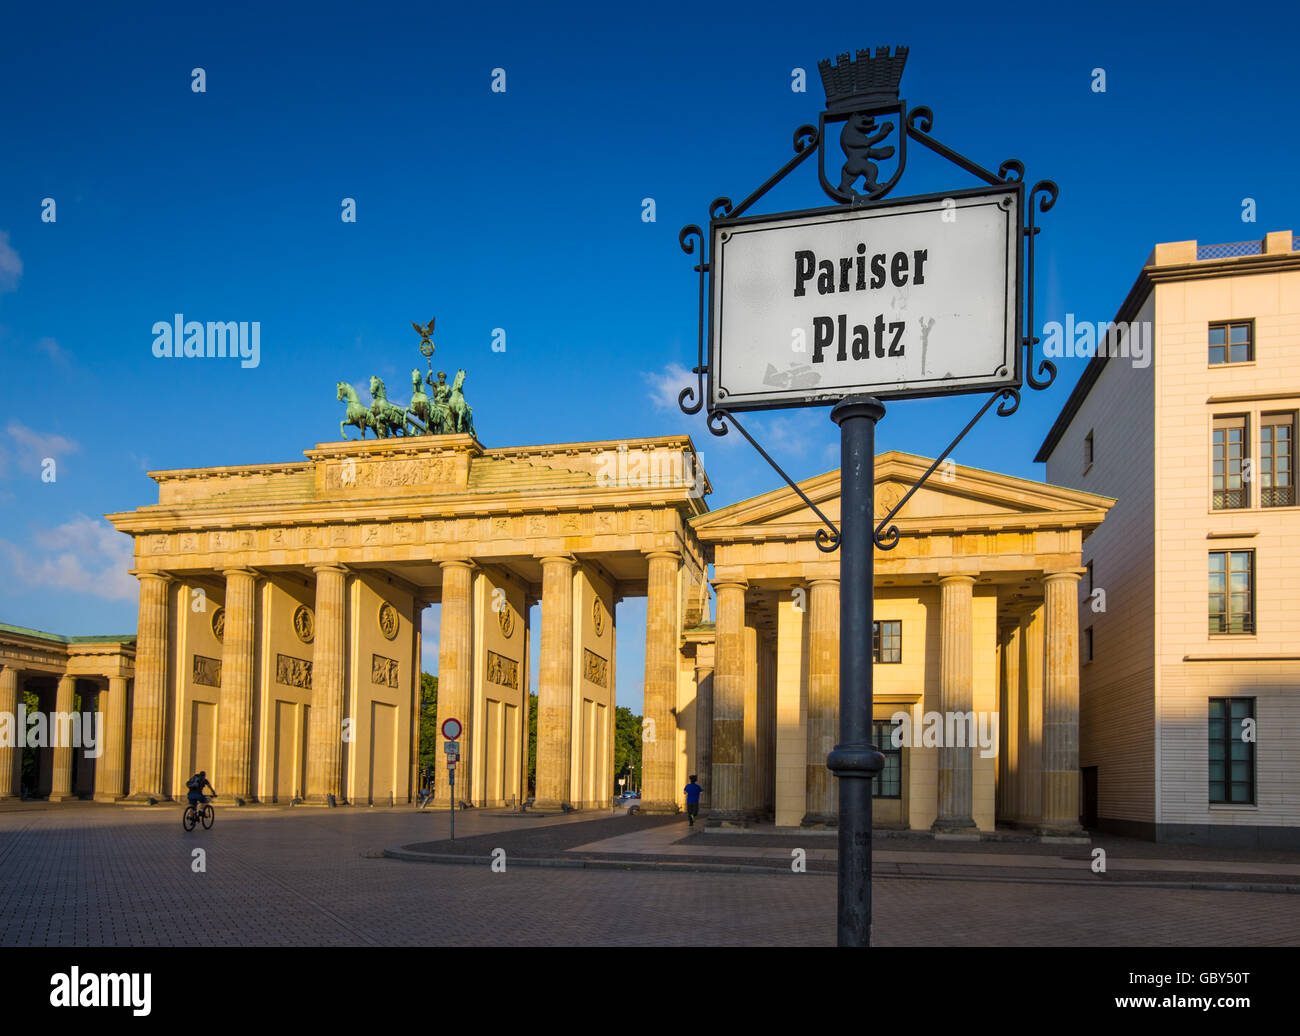 Pariser Platz con il famoso Brandenburger Tor (Porta di Brandeburgo), uno dei più noti monumenti e simboli nazionali di Germania, Foto Stock